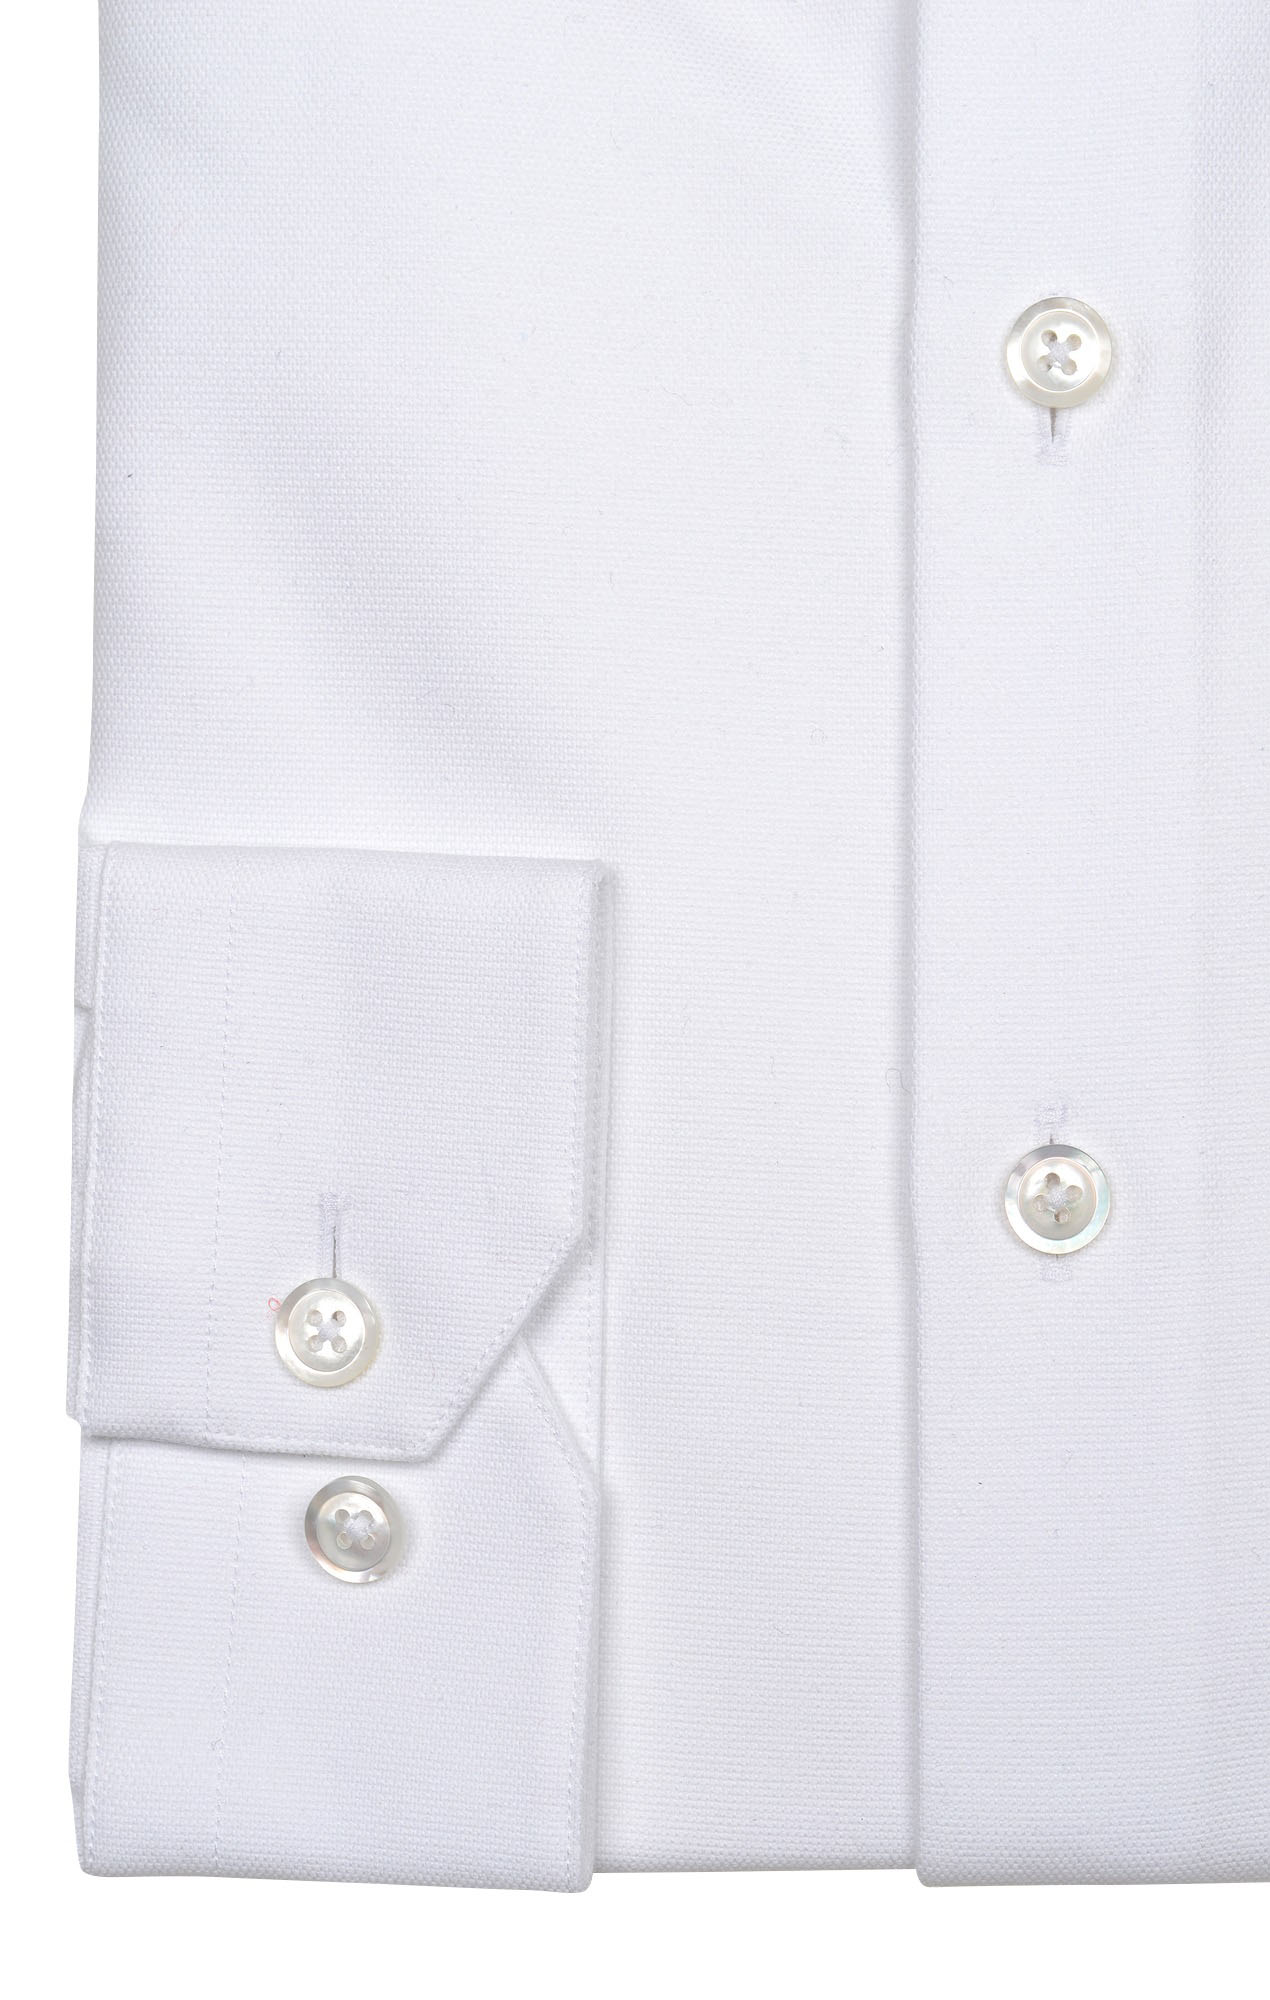 Chemise blanche Oxford épais Les chemises